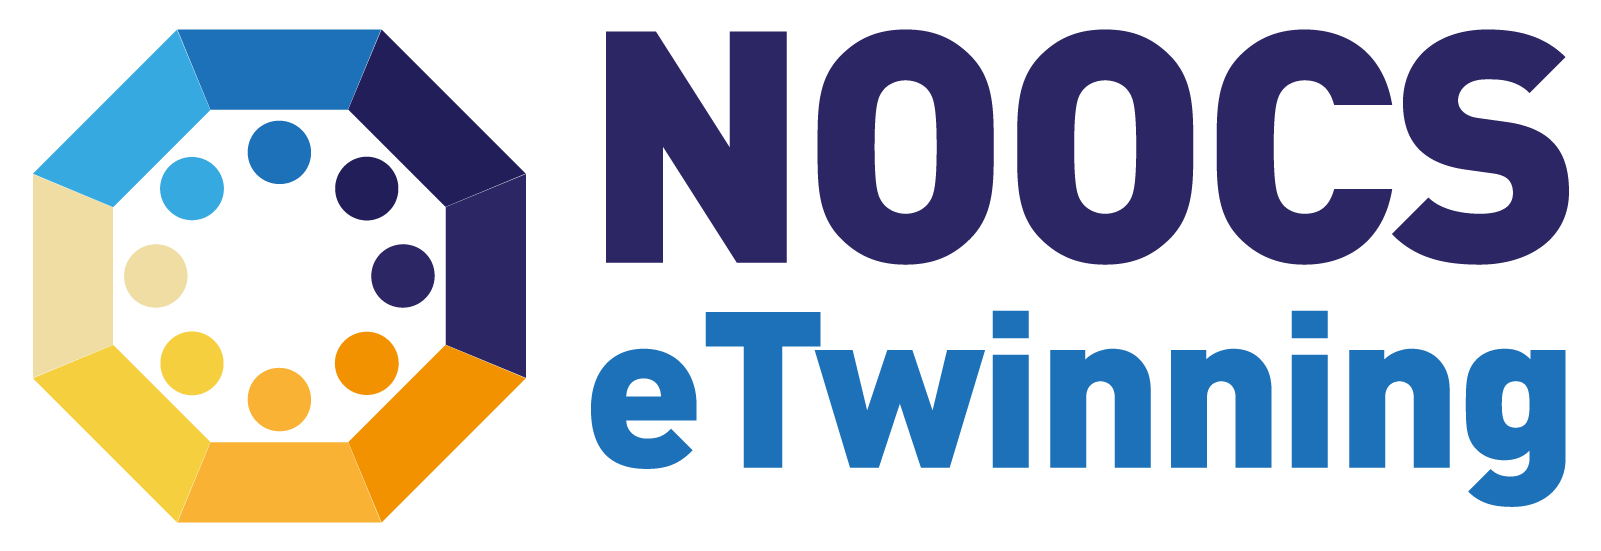 4ª edición de los 10 NOOC eTwinning